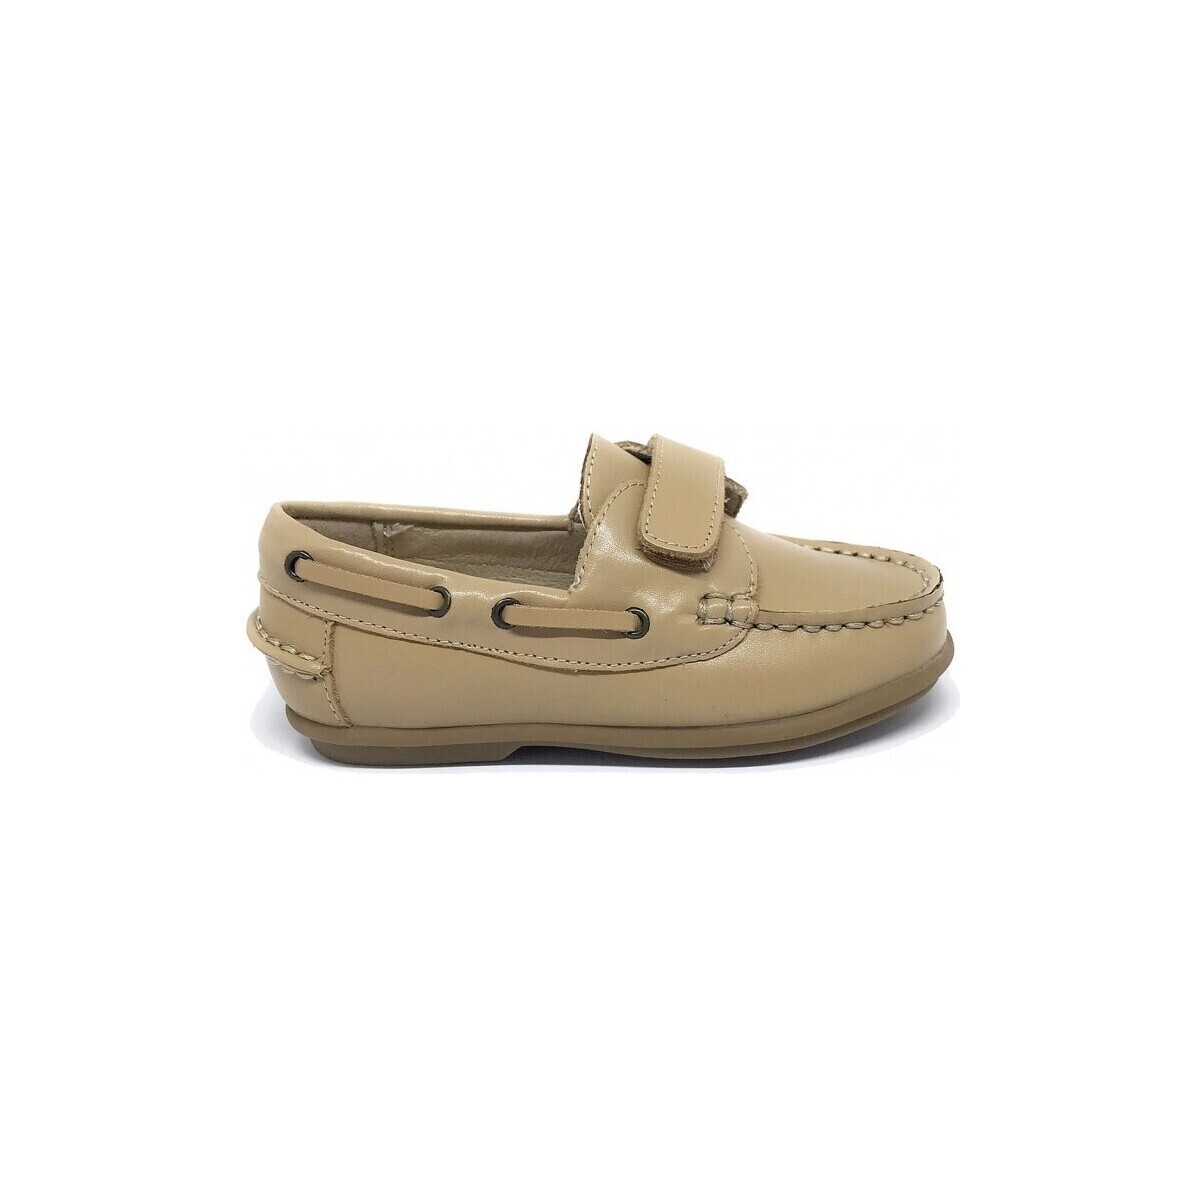 Boat shoes D'bébé 24536-18